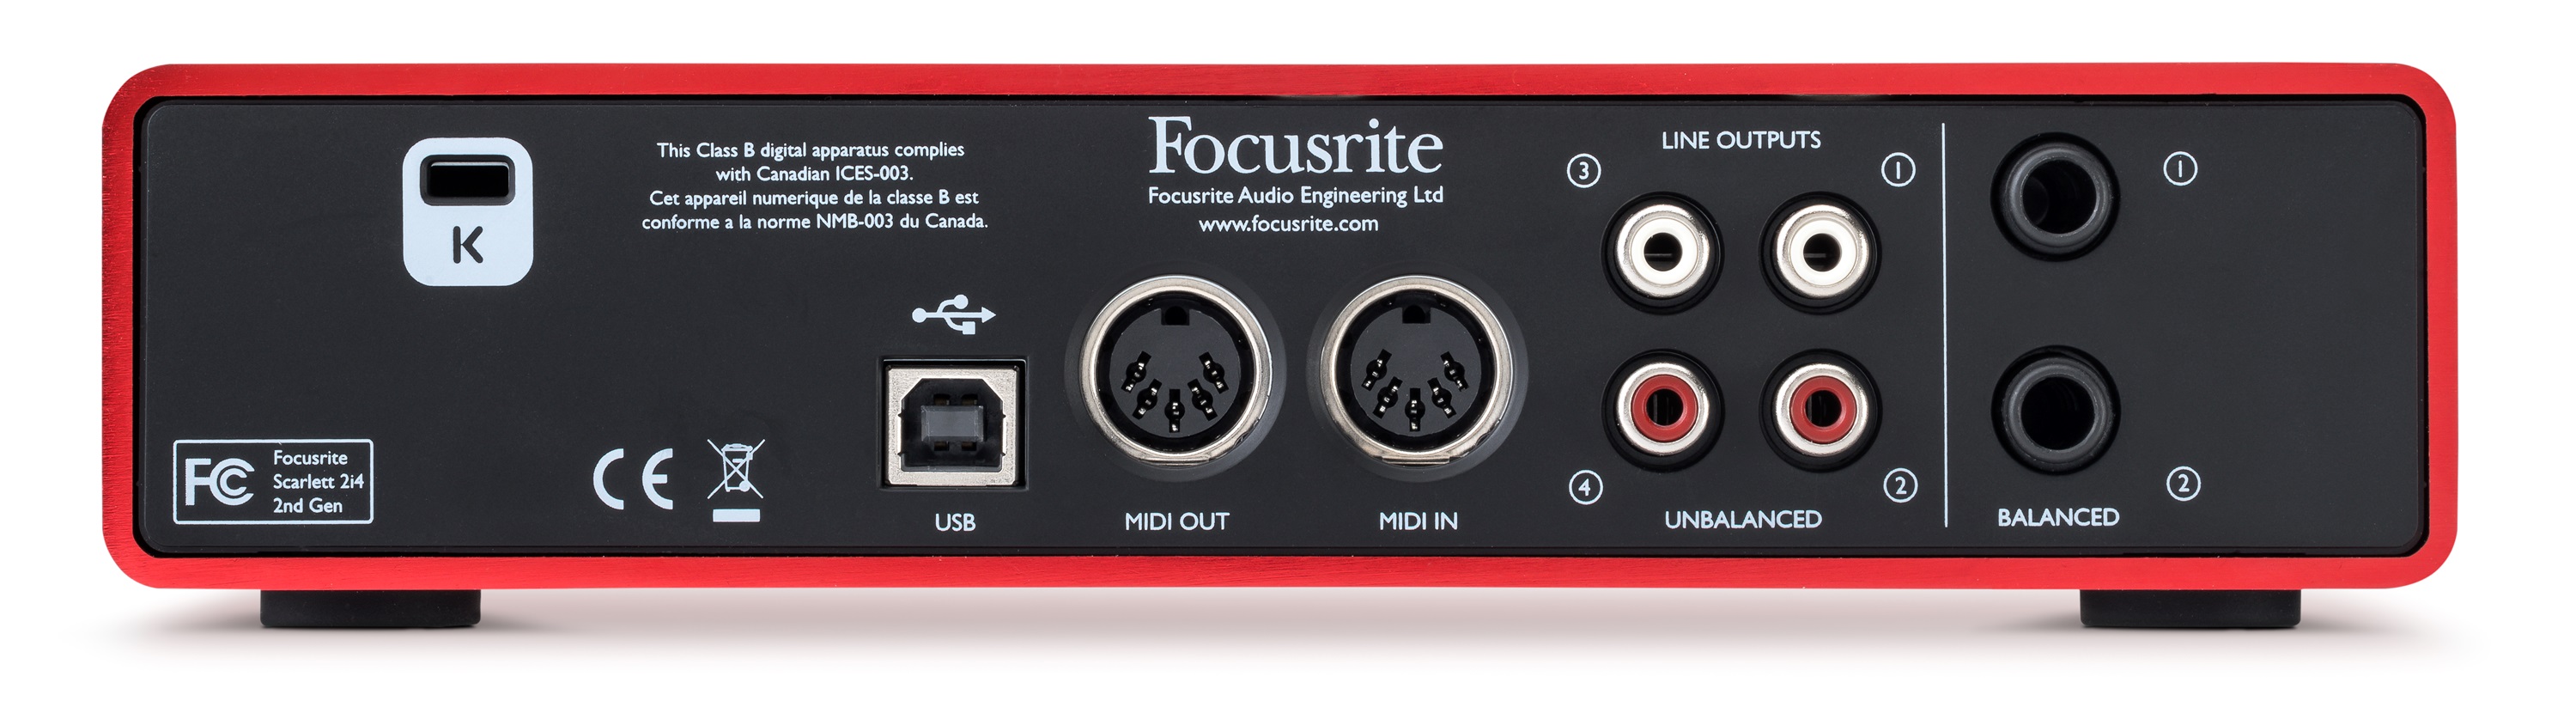 Focusrite Scarlett2 2i4 - Interface de audio USB - Variation 1